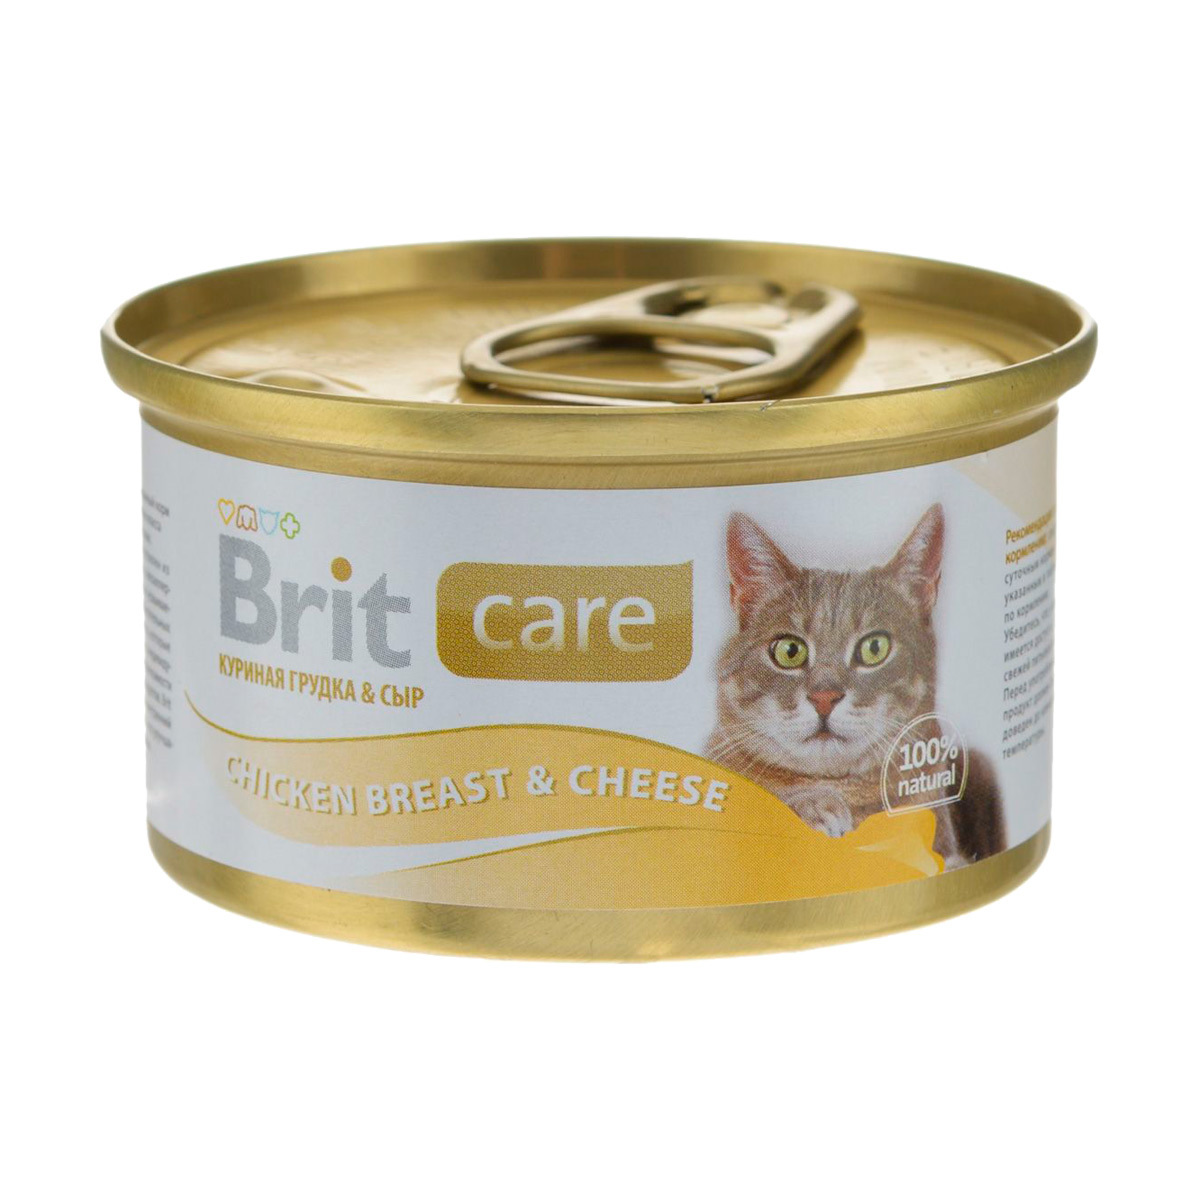 Care Cat консервы для кошек, с куриной грудкой и сыром, Brit от зоомагазина Дино Зоо